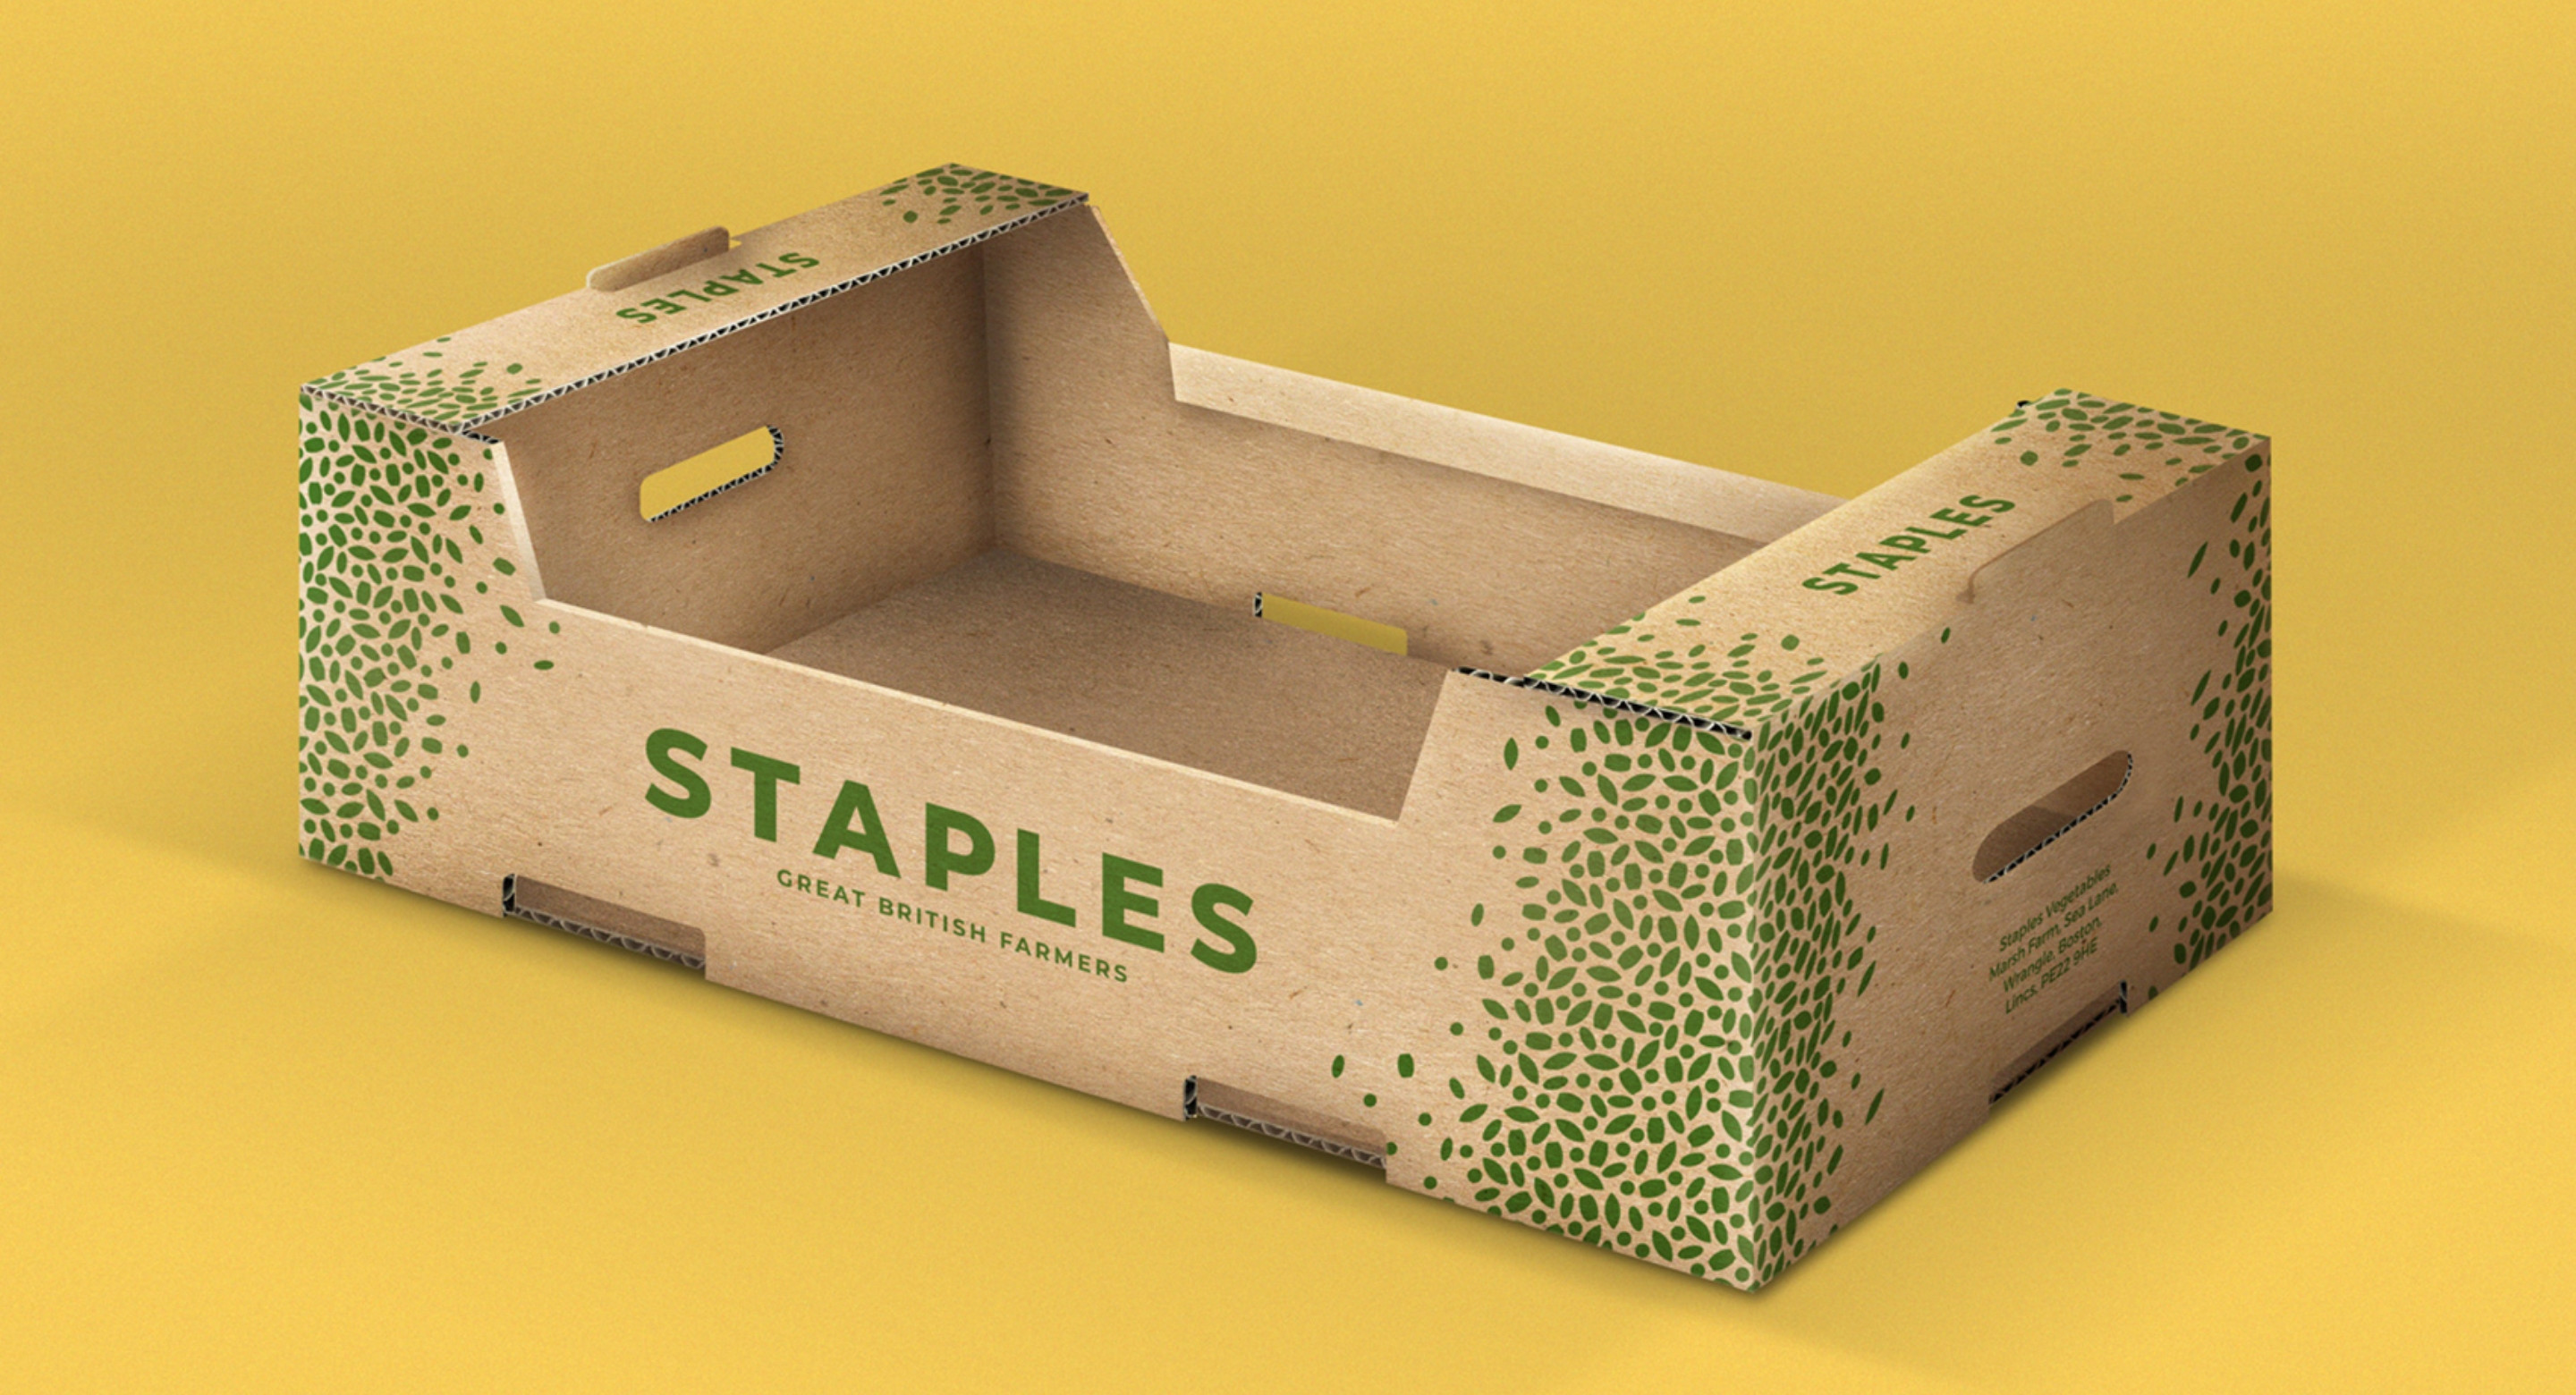 Staples Vegetables farm cardboard crate packaging design by Root Studio